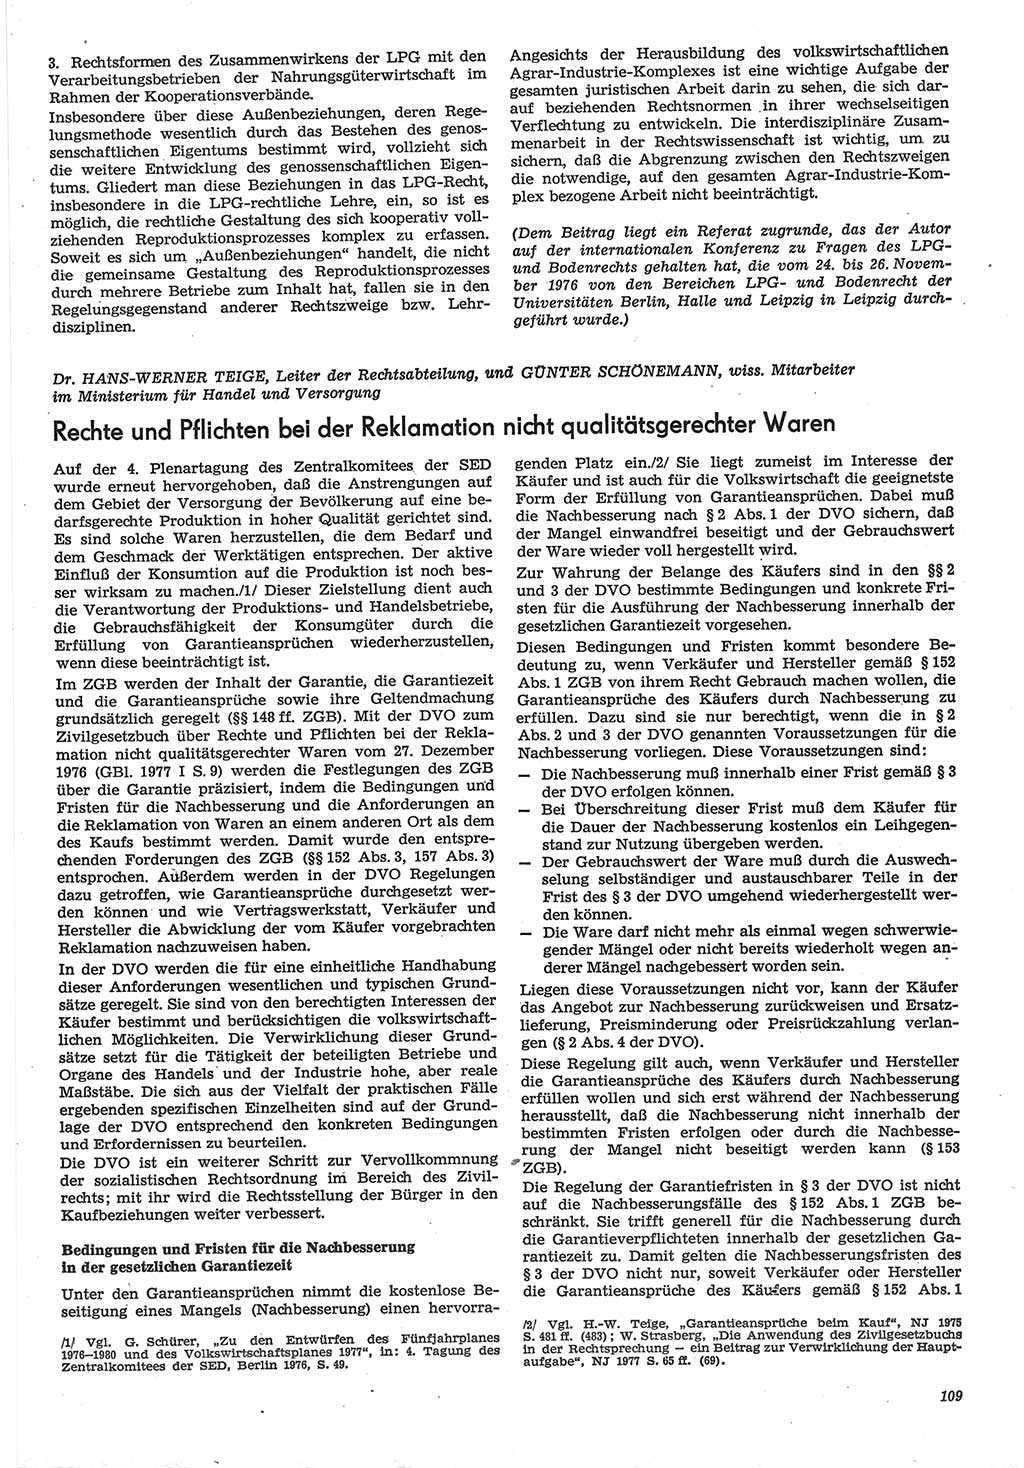 Neue Justiz (NJ), Zeitschrift für Recht und Rechtswissenschaft-Zeitschrift, sozialistisches Recht und Gesetzlichkeit, 31. Jahrgang 1977, Seite 109 (NJ DDR 1977, S. 109)